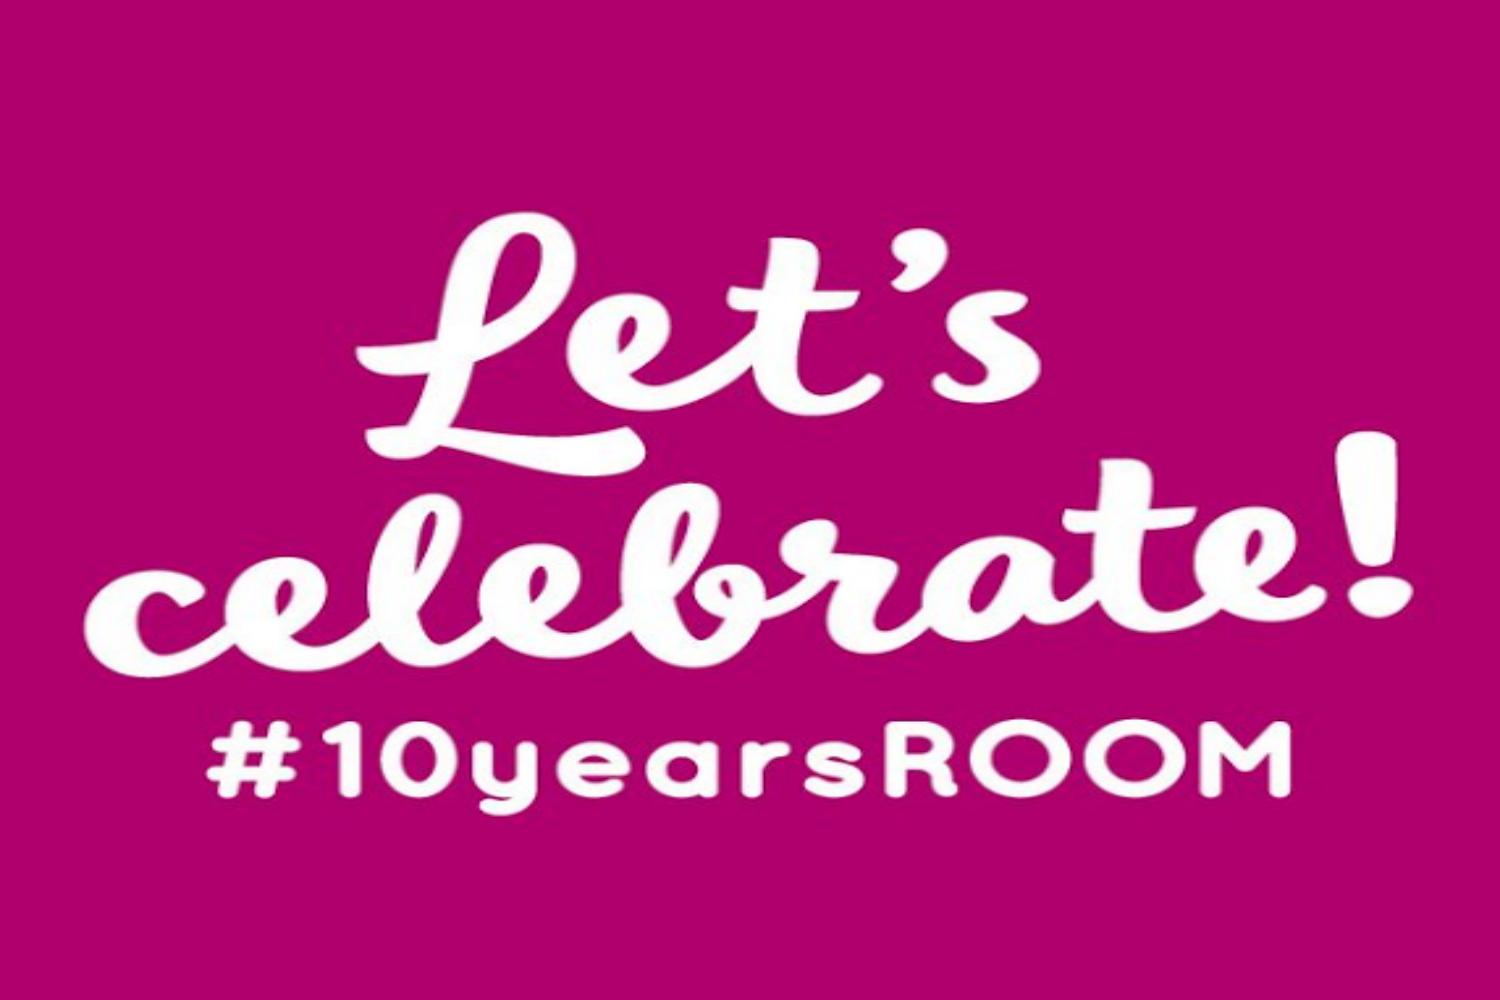 Hostel ROOM Rotterdam 10 Years Anniversary